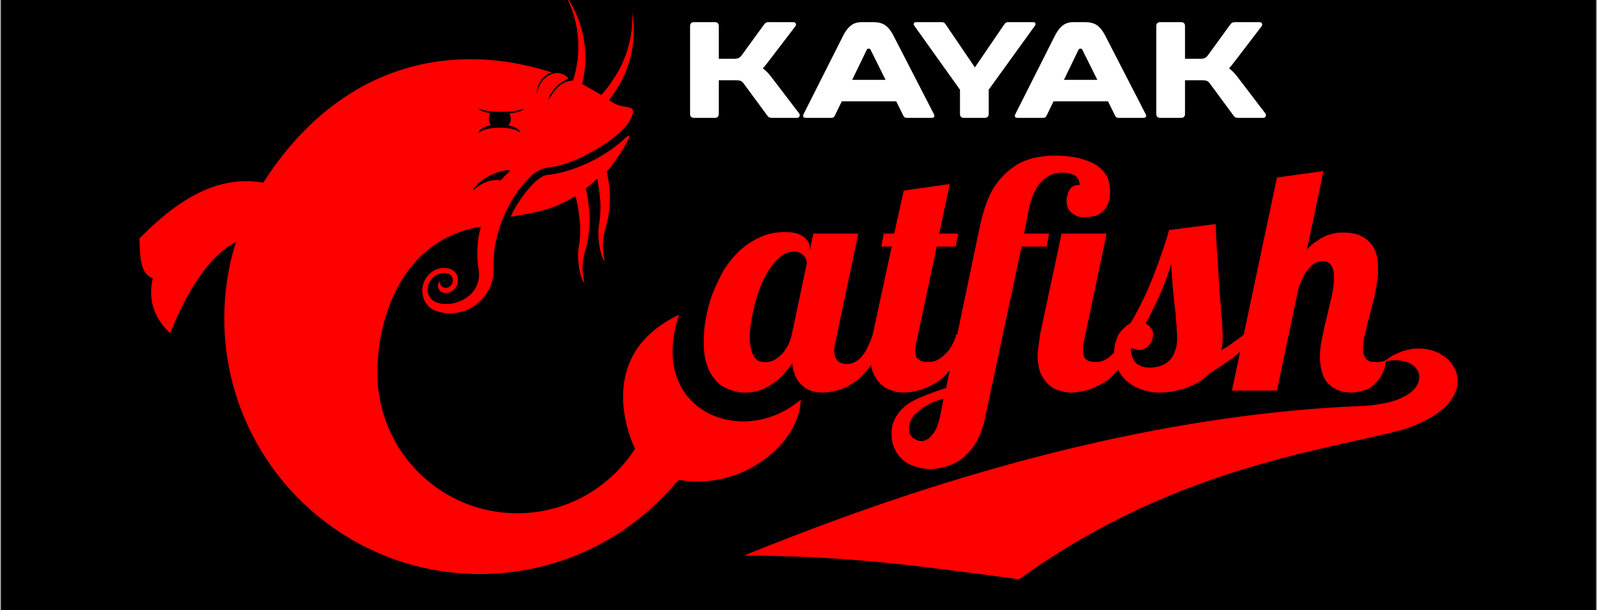                     Kayak Catfish